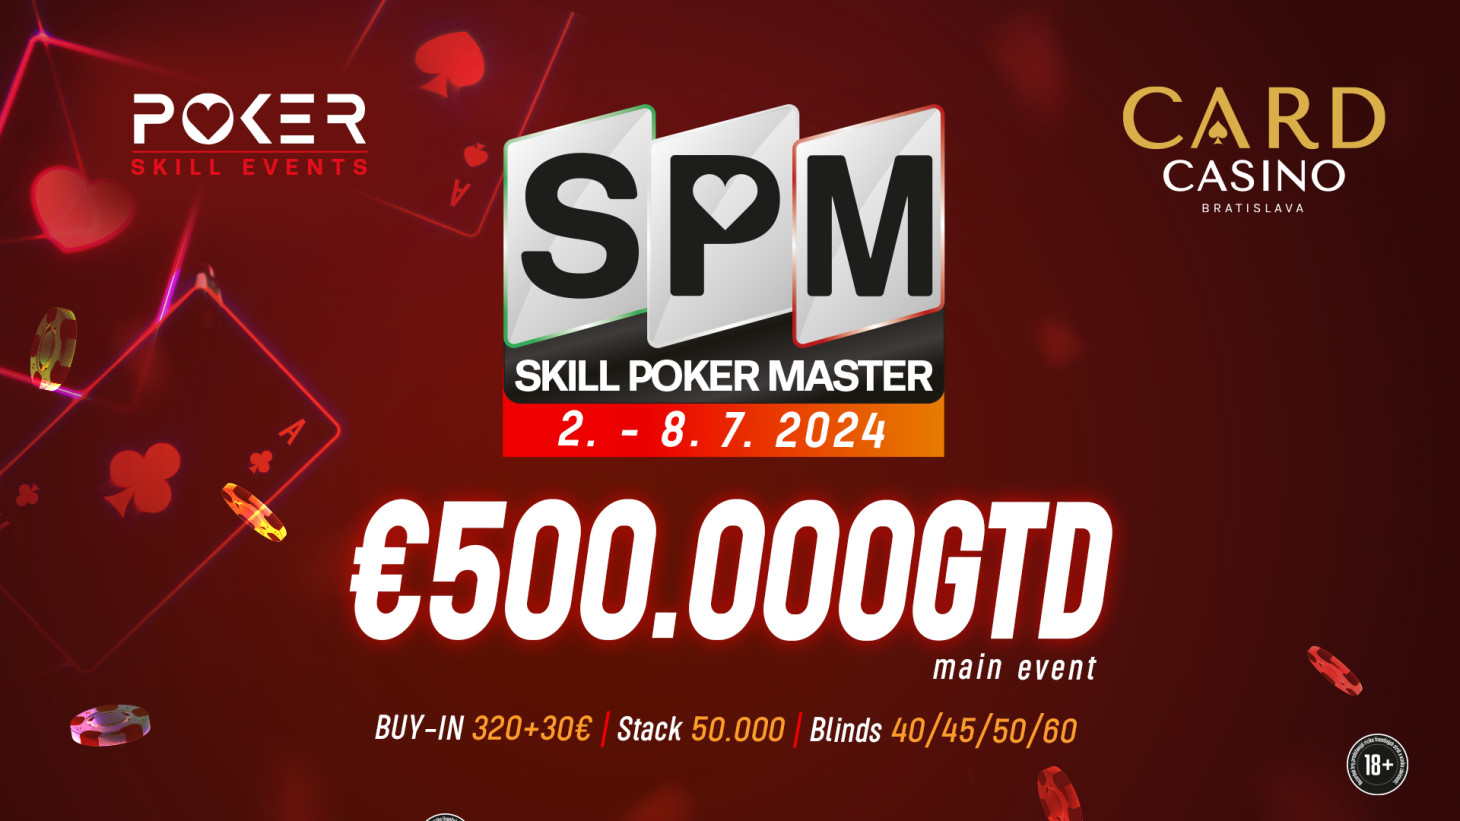 Das Skill Poker Masters Festival kommt nach Cardo mit einem €500.000 GTD Main event!